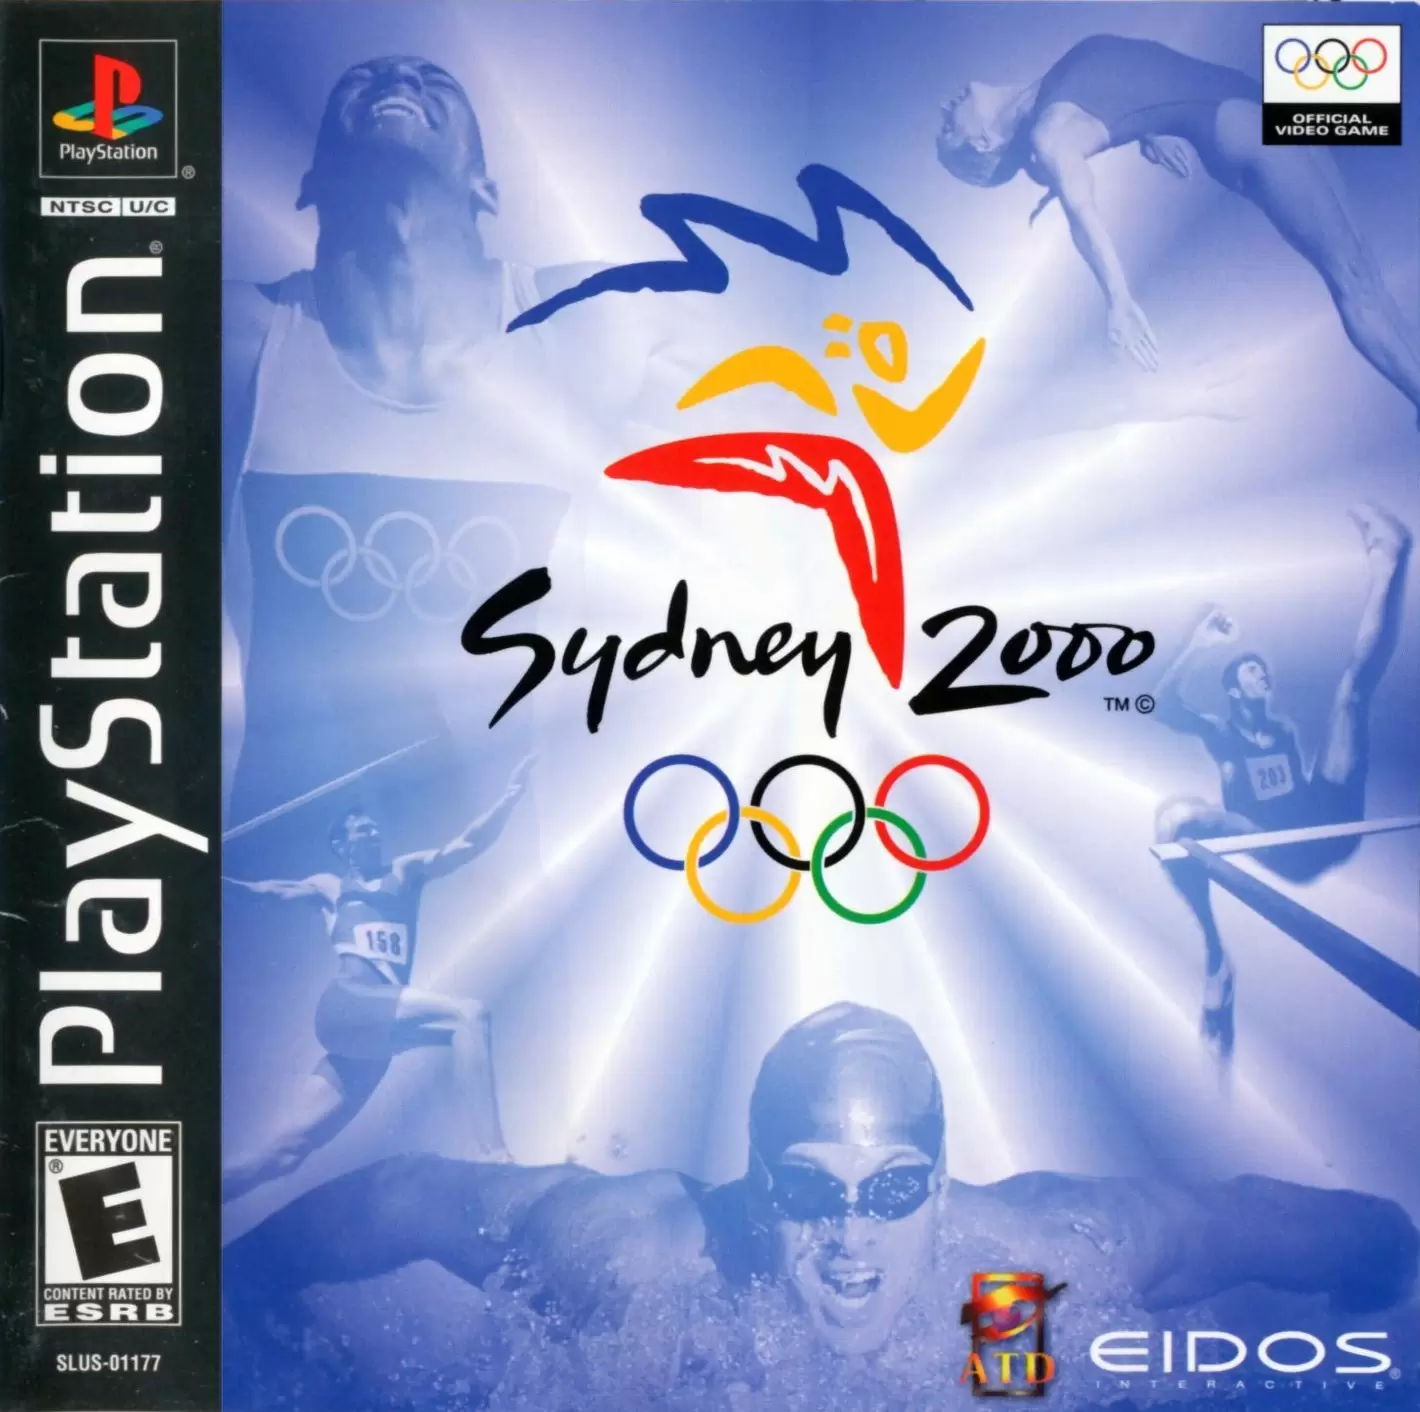 Playstation games - Sydney 2000